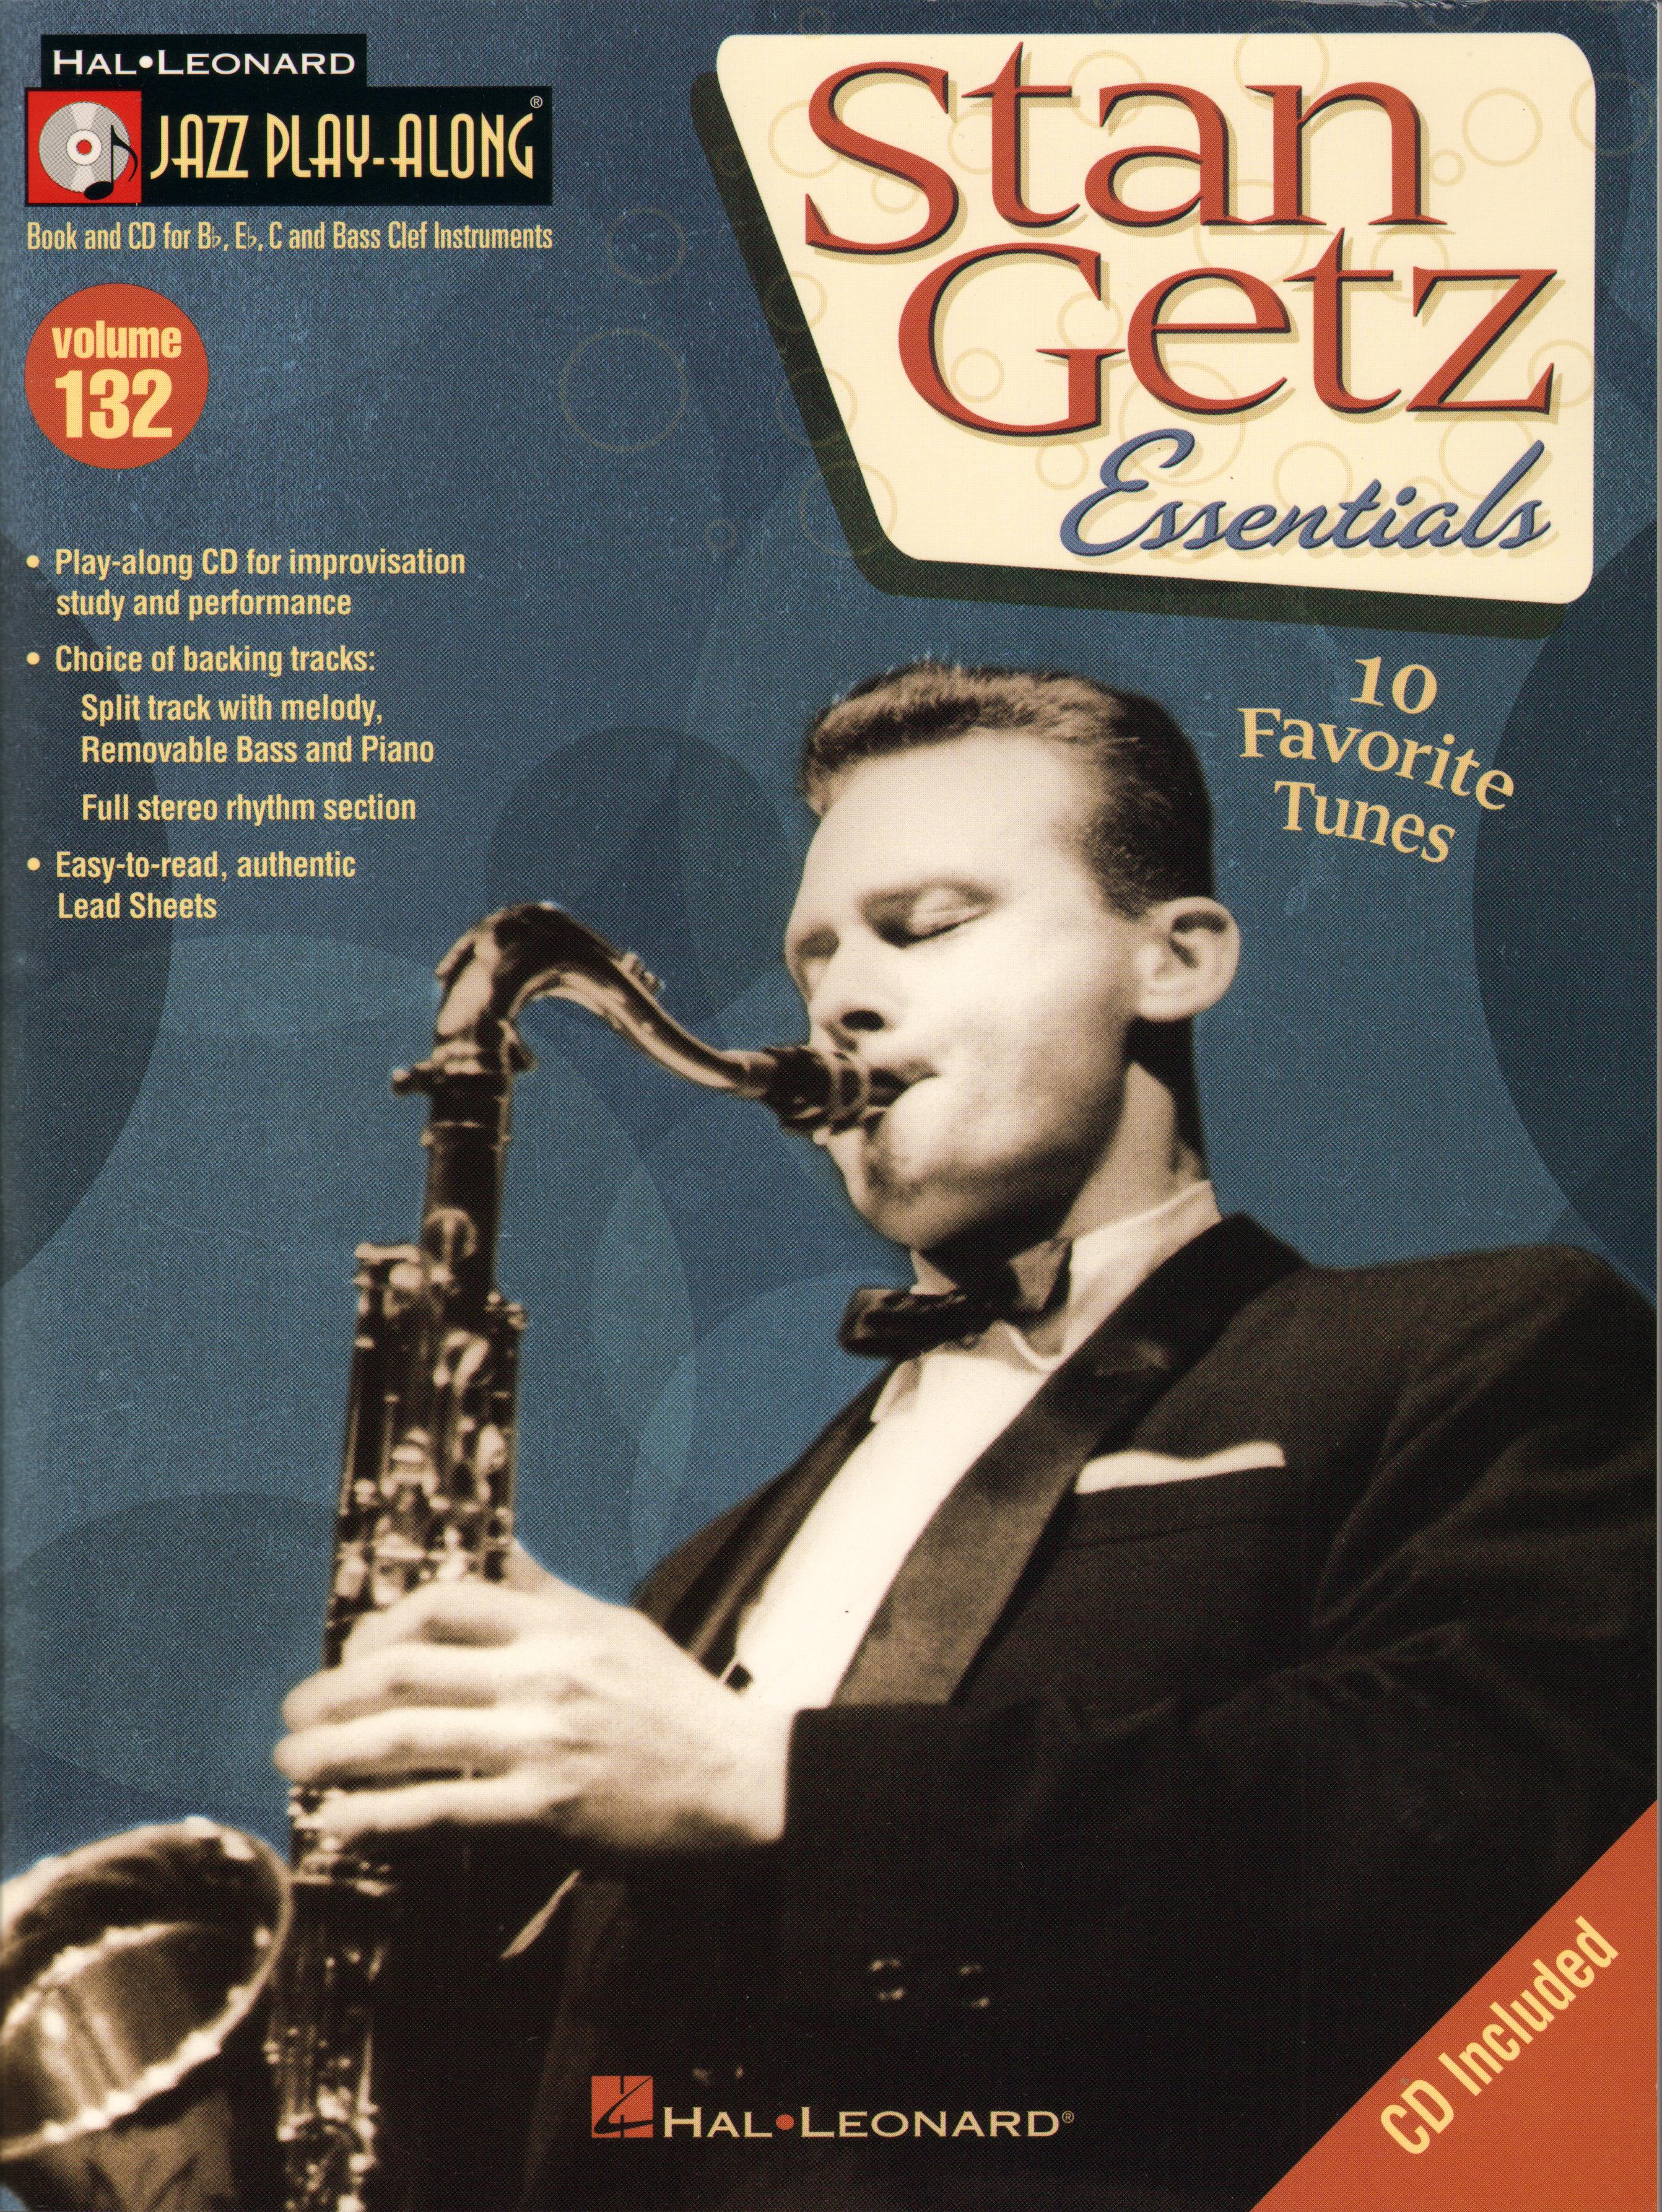 Jazz Play Along 132 Stan Getz Essentials Book & Cd Sheet Music Songbook